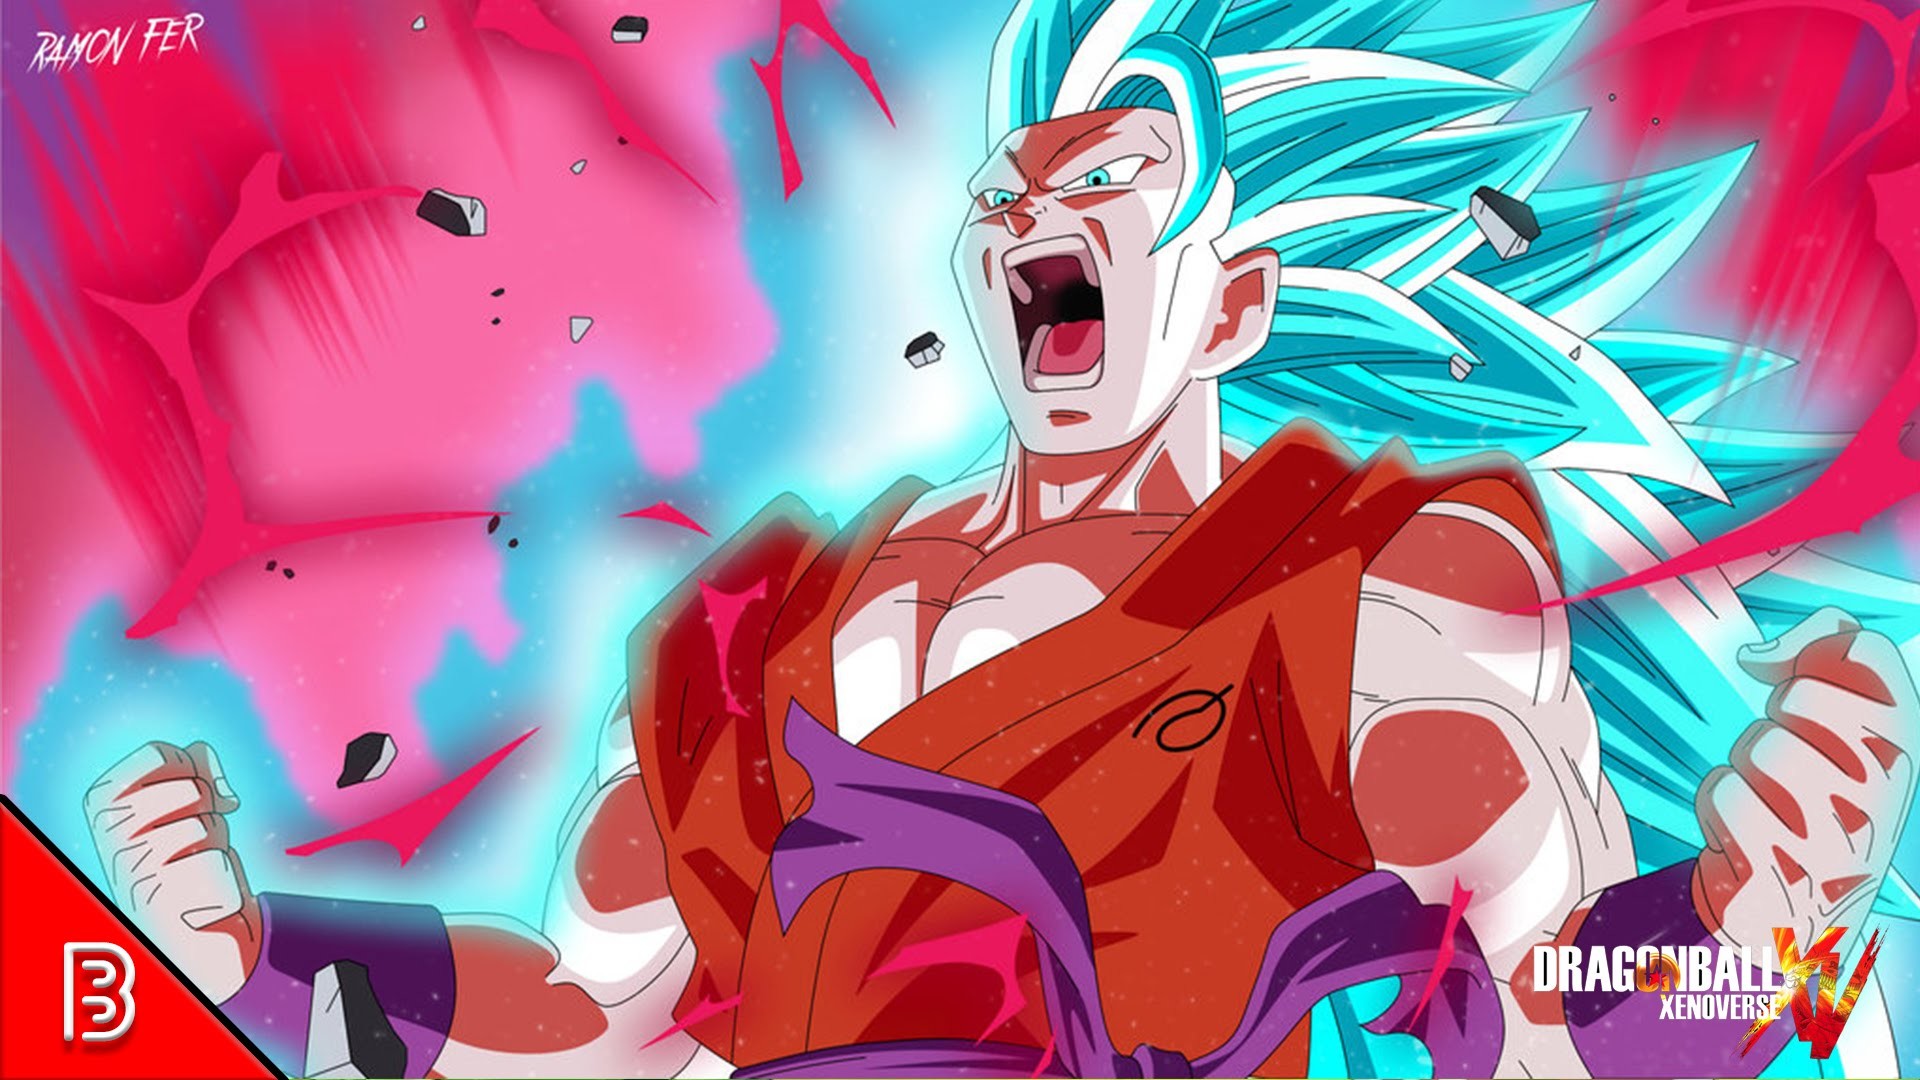 Goku's transformation into a god - wide 4